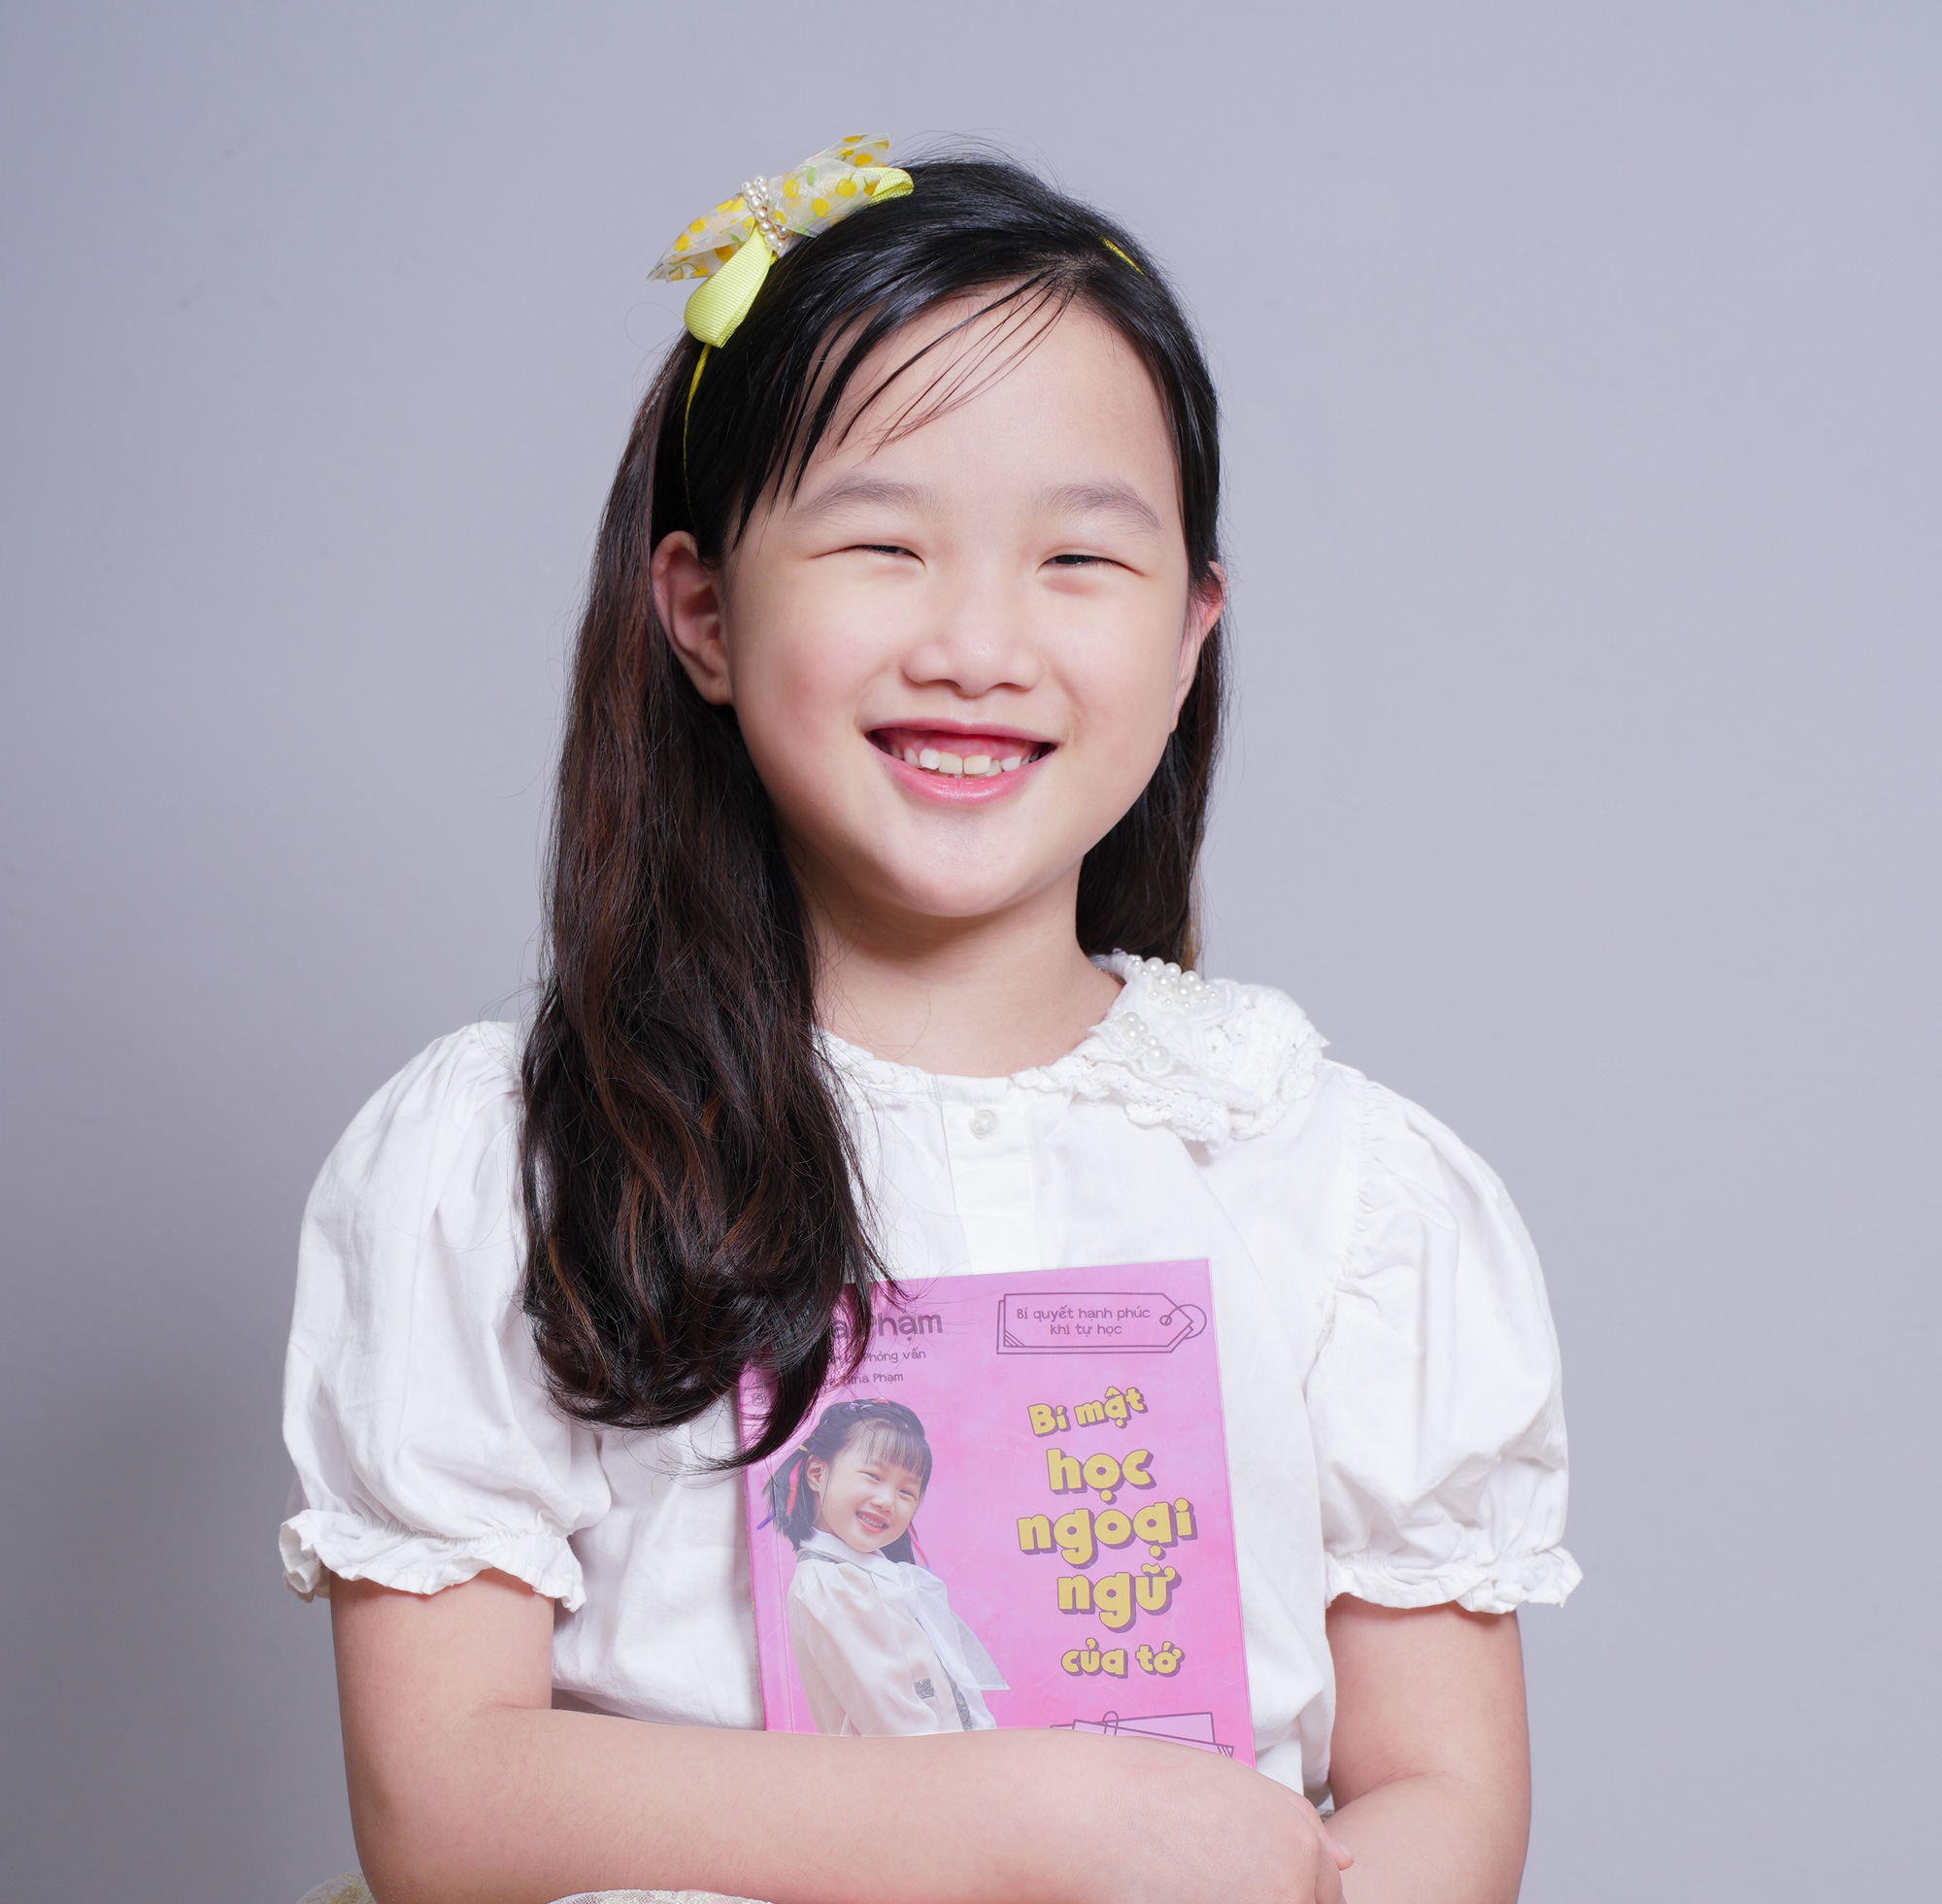 Con gái xinh xắn của MC tài chính ở VTV, thông thạo 3 ngoại ngữ khi mới 7 tuổi - Ảnh 3.